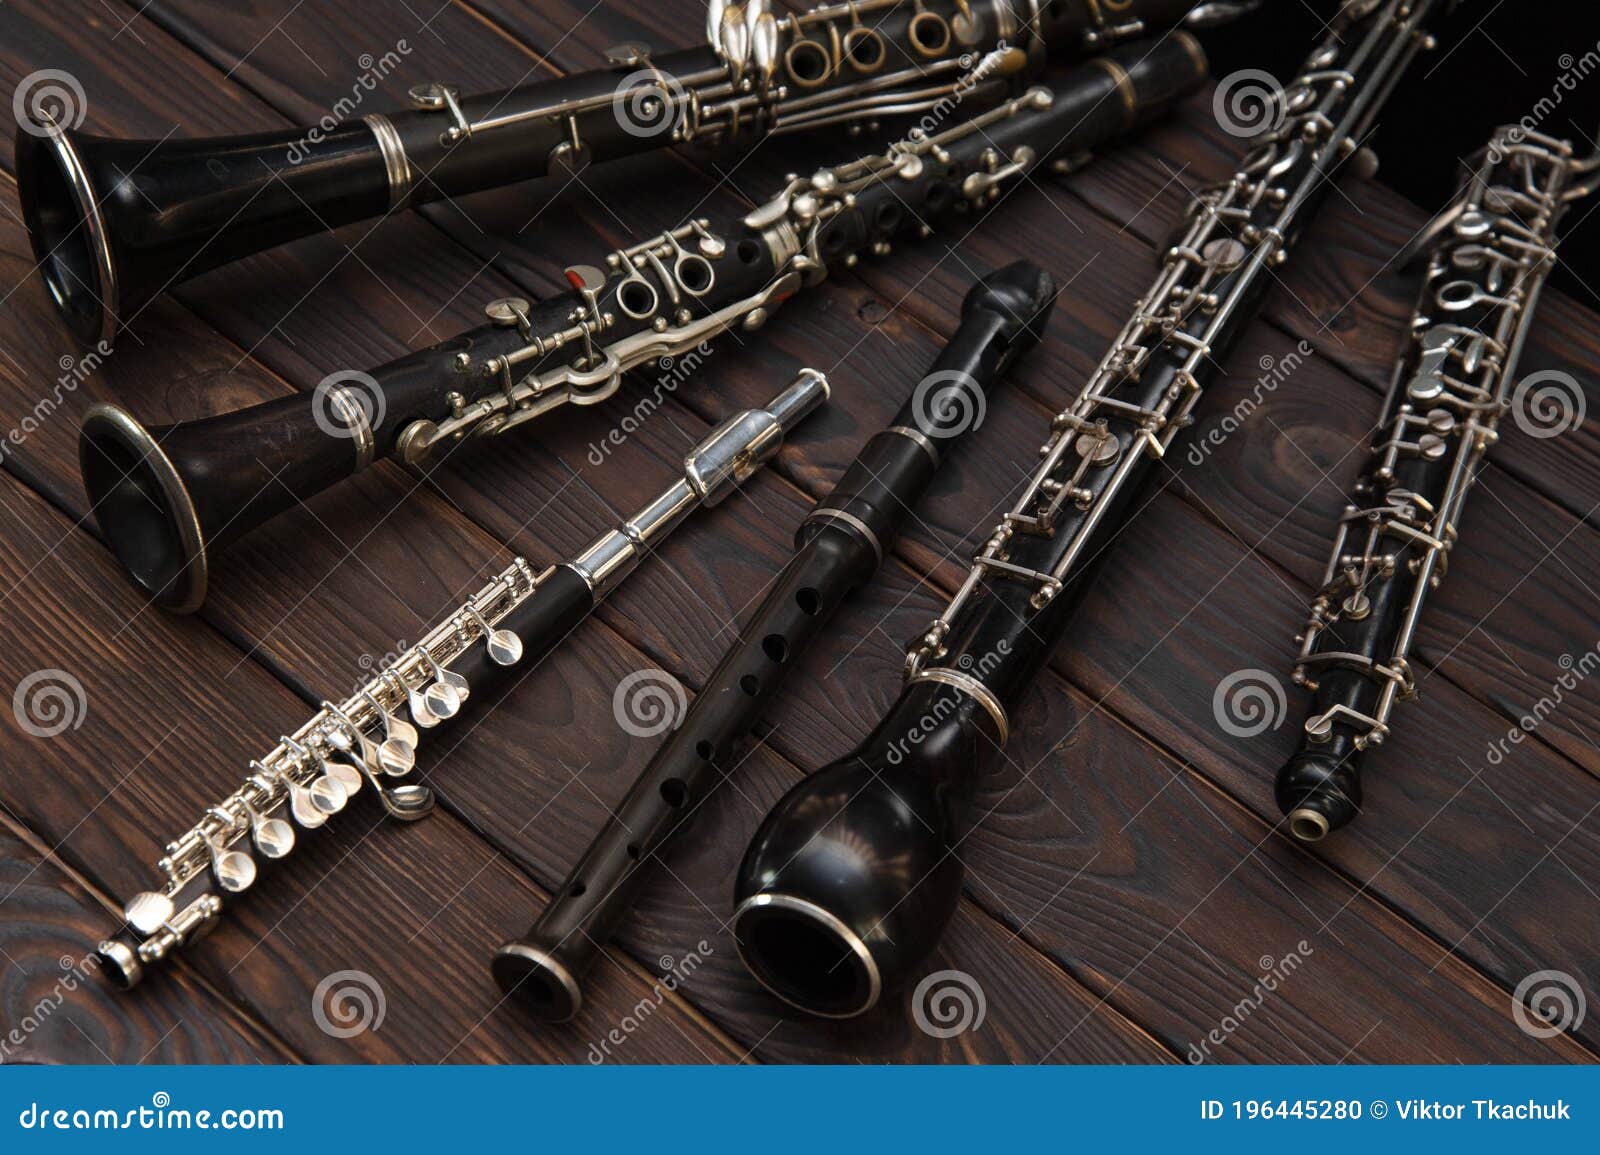 Гобой труба кларнет. Флейта и гобой. Woodwinds инструменты. Фото гобоя вблизи.